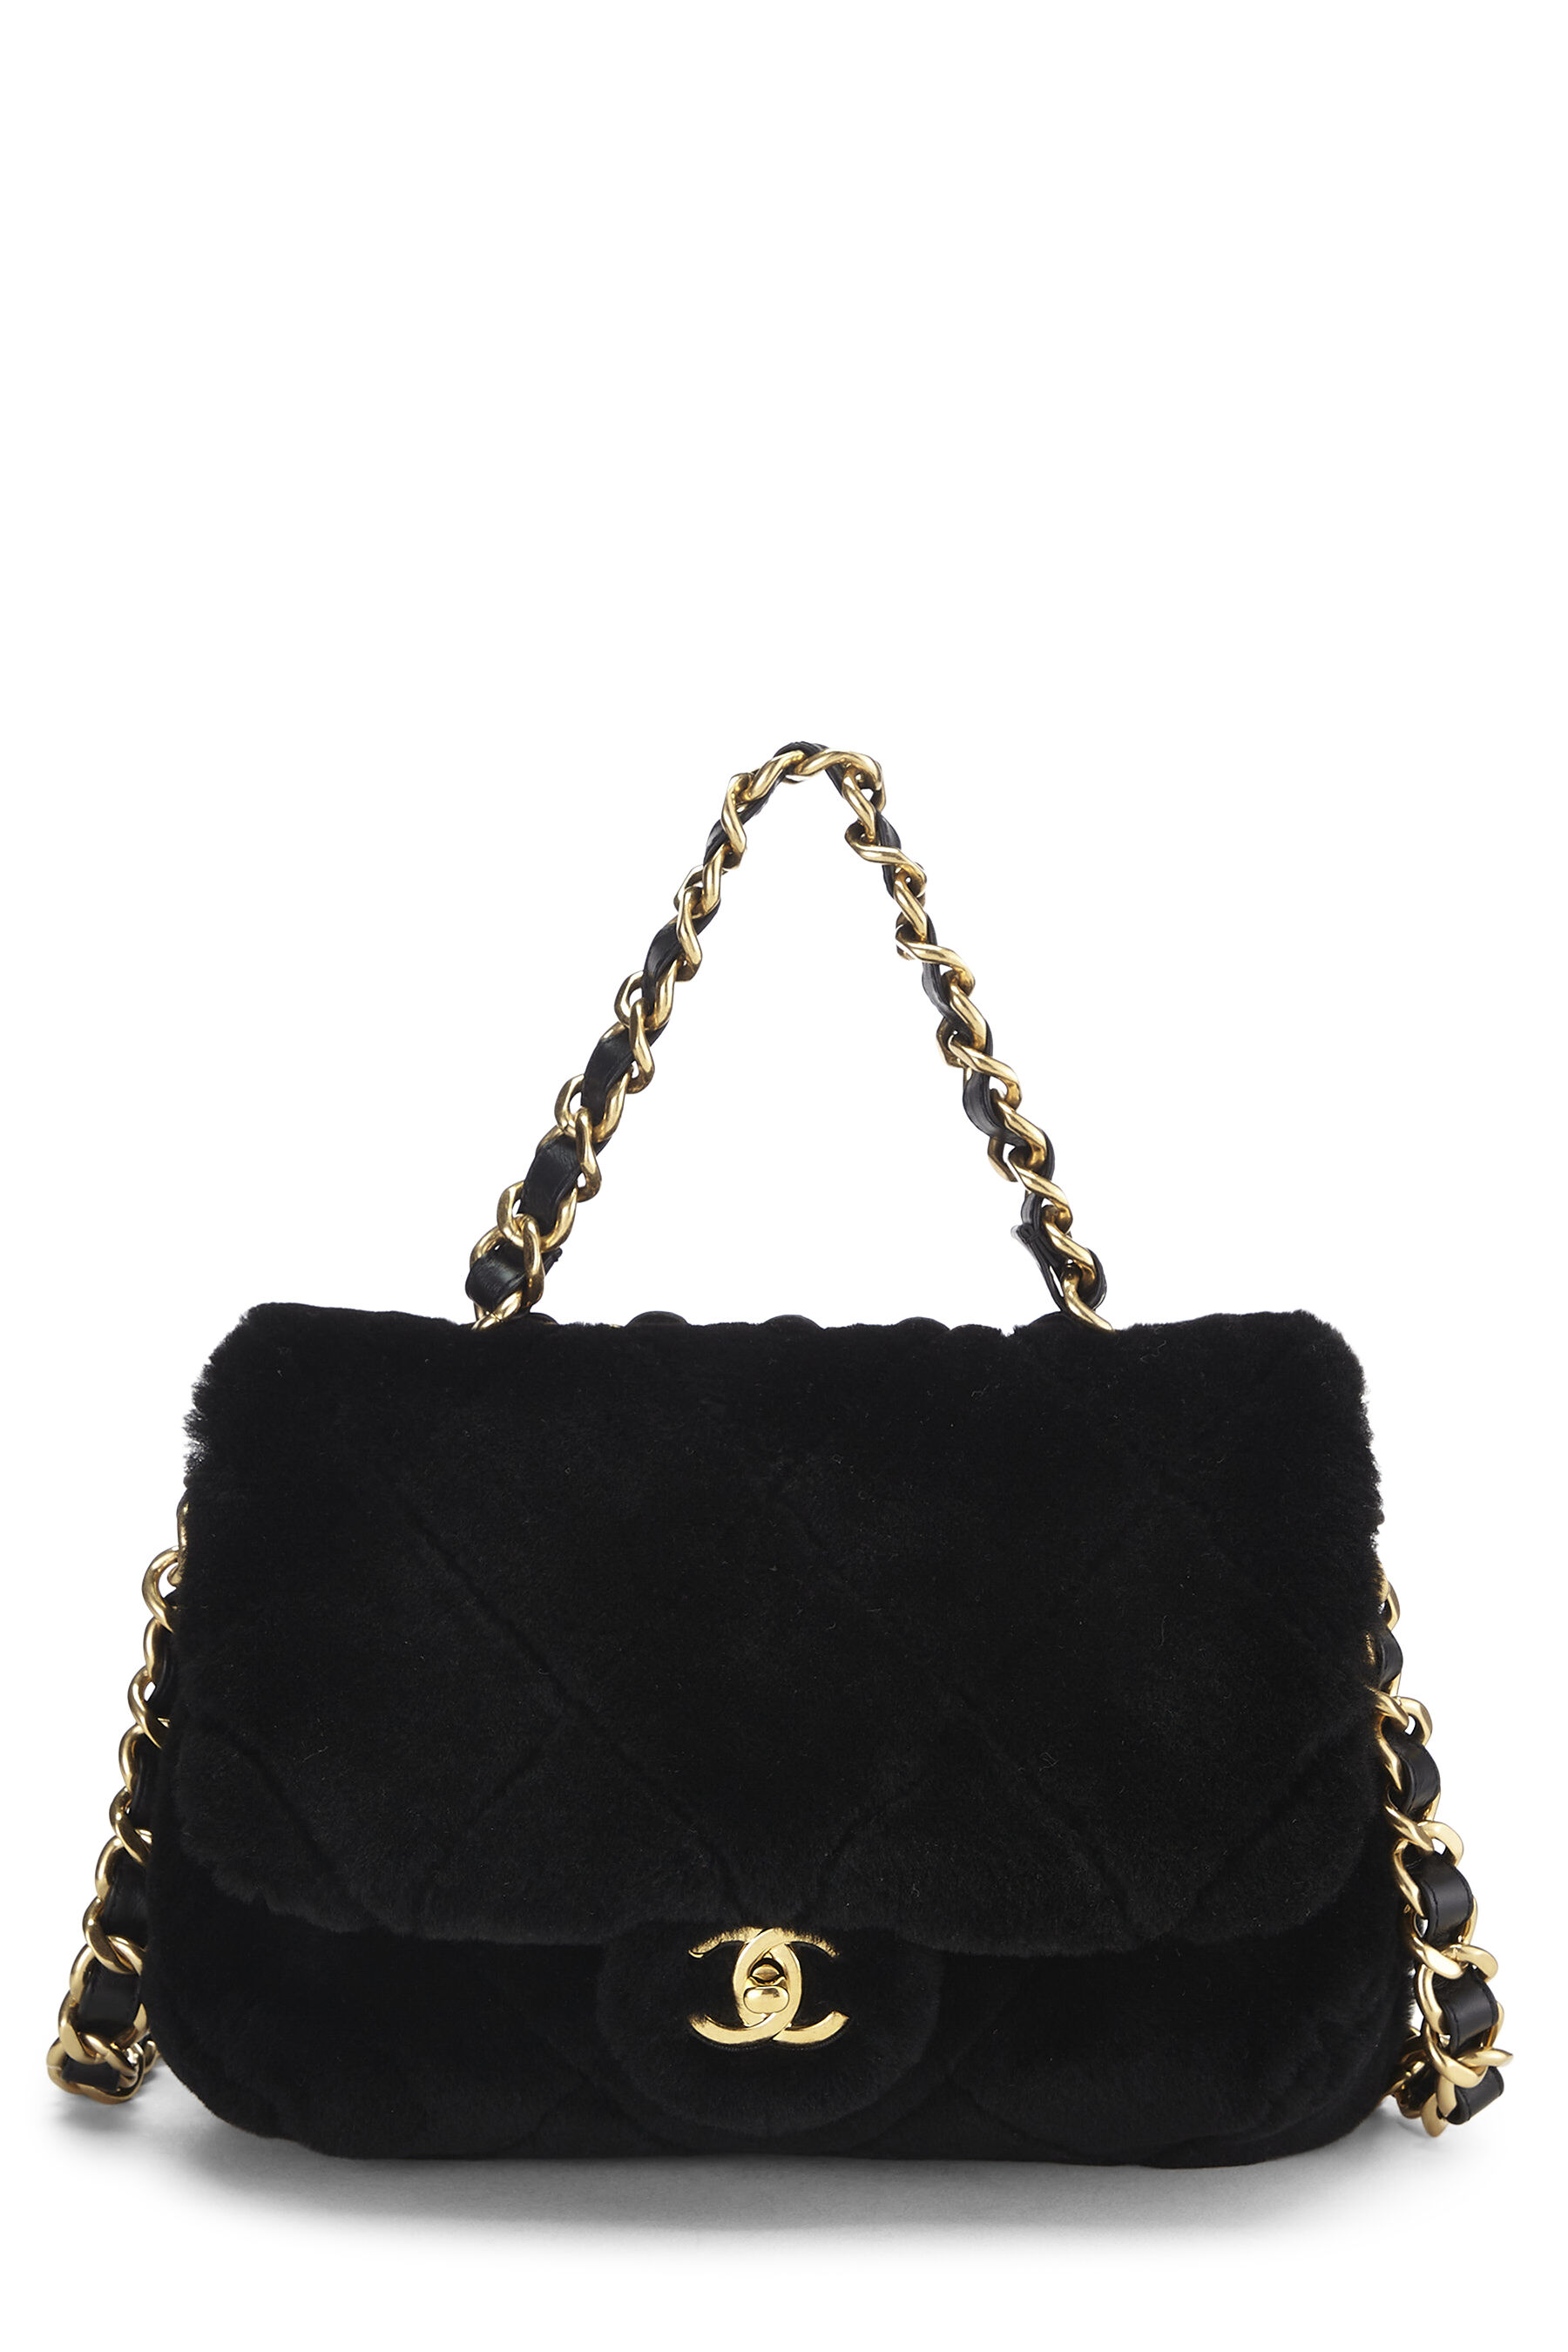 Chanel black velvet handbag presented by funkyfinders